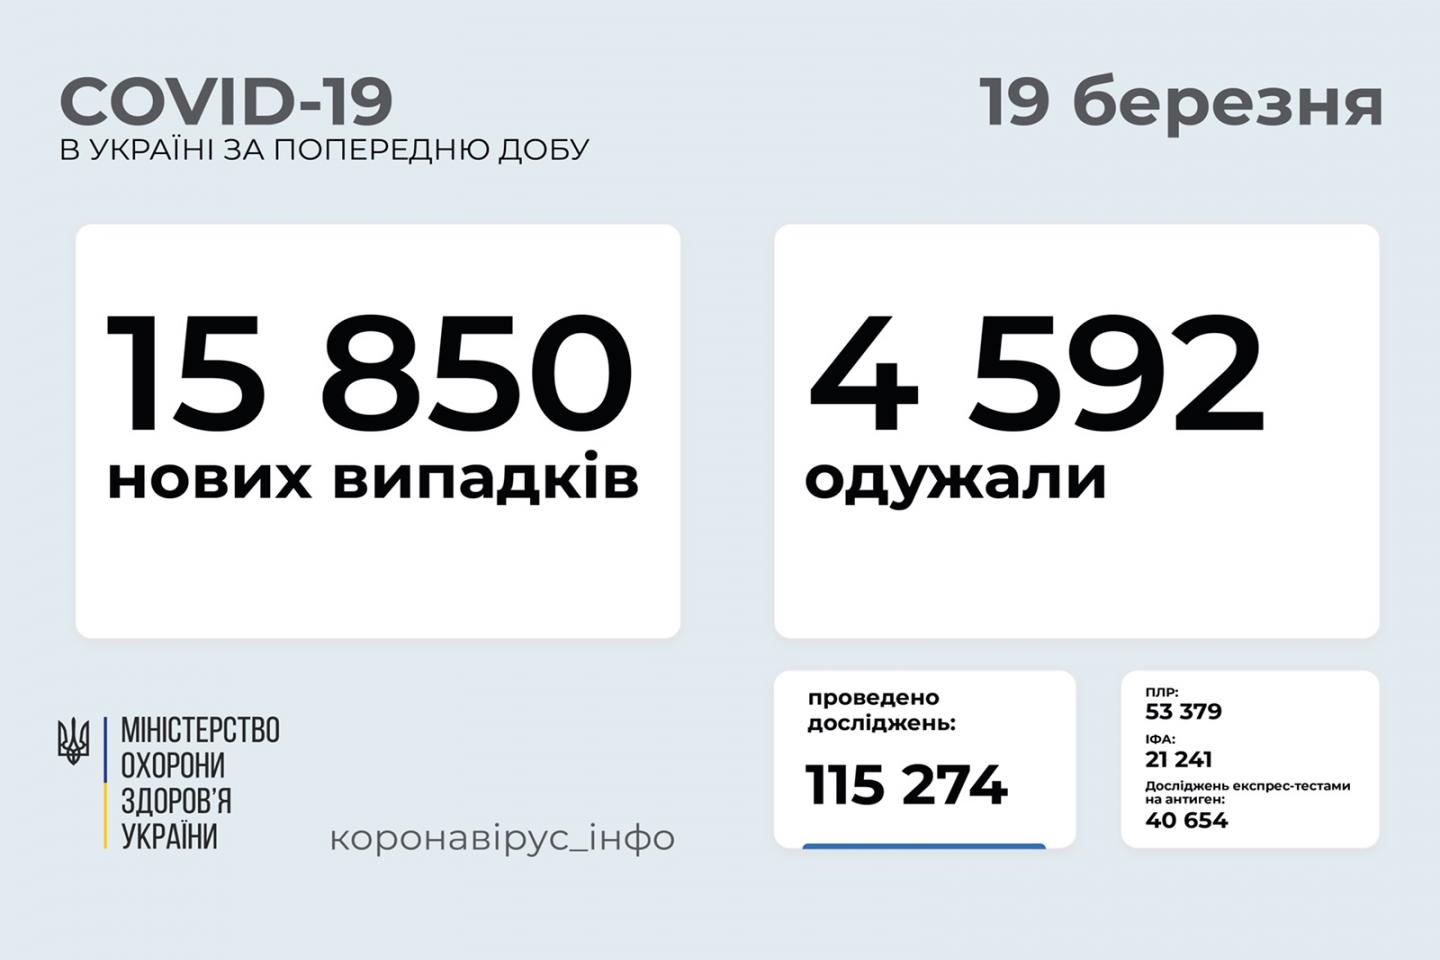 http://dunrada.gov.ua/uploadfile/archive_news/2021/03/19/2021-03-19_3412/images/images-2629.jpg